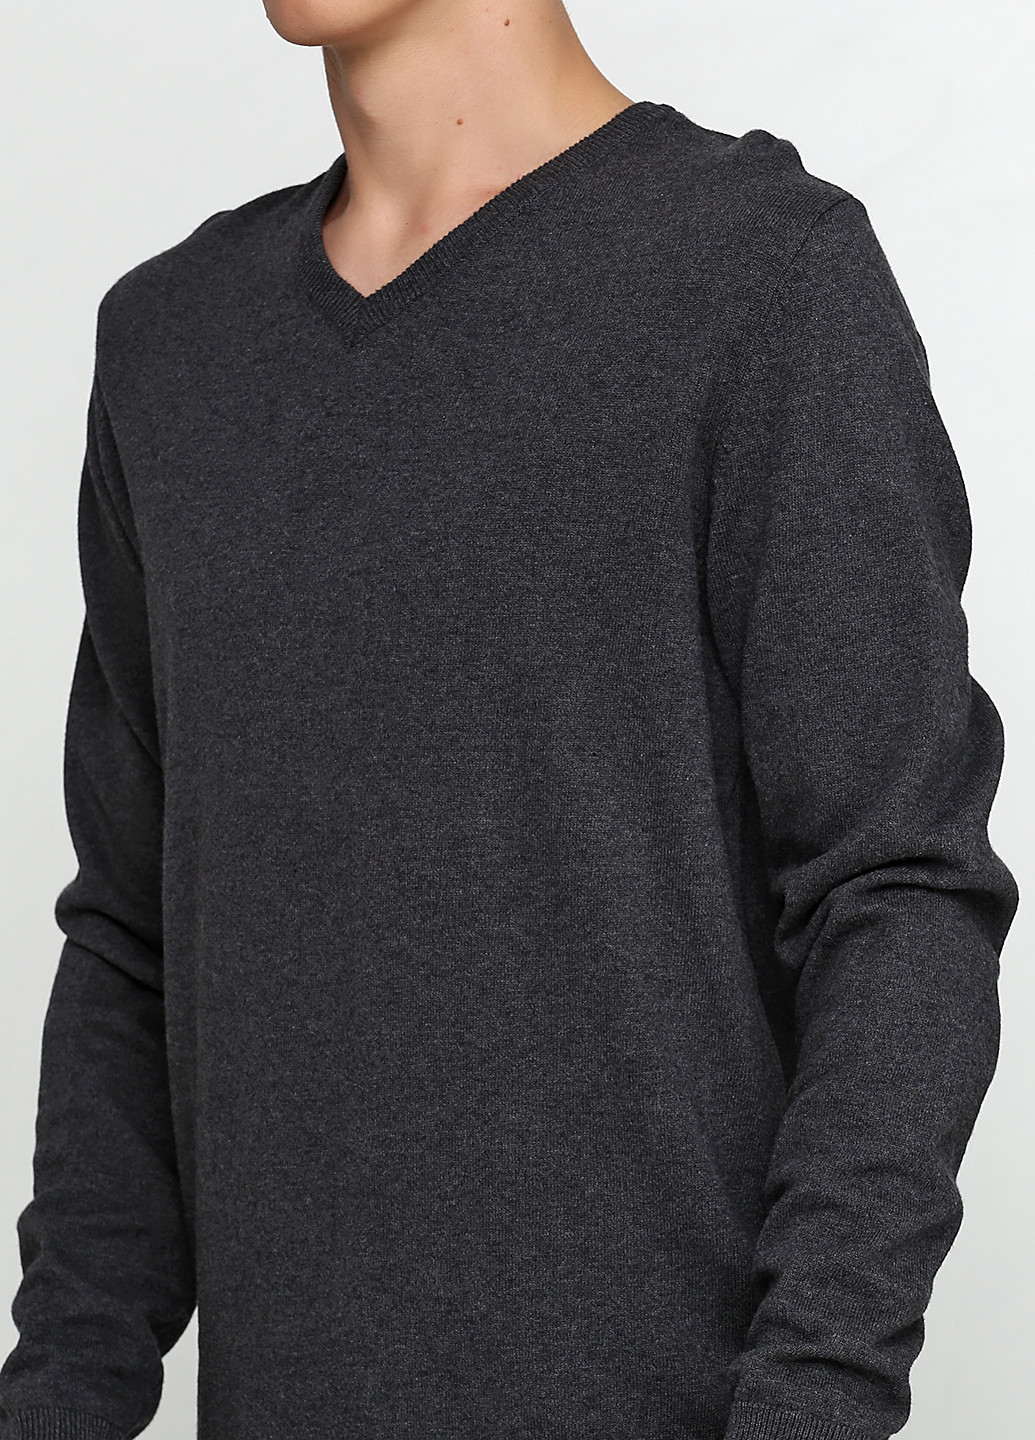 Грифельно-серый демисезонный пуловер пуловер Jean Pascal